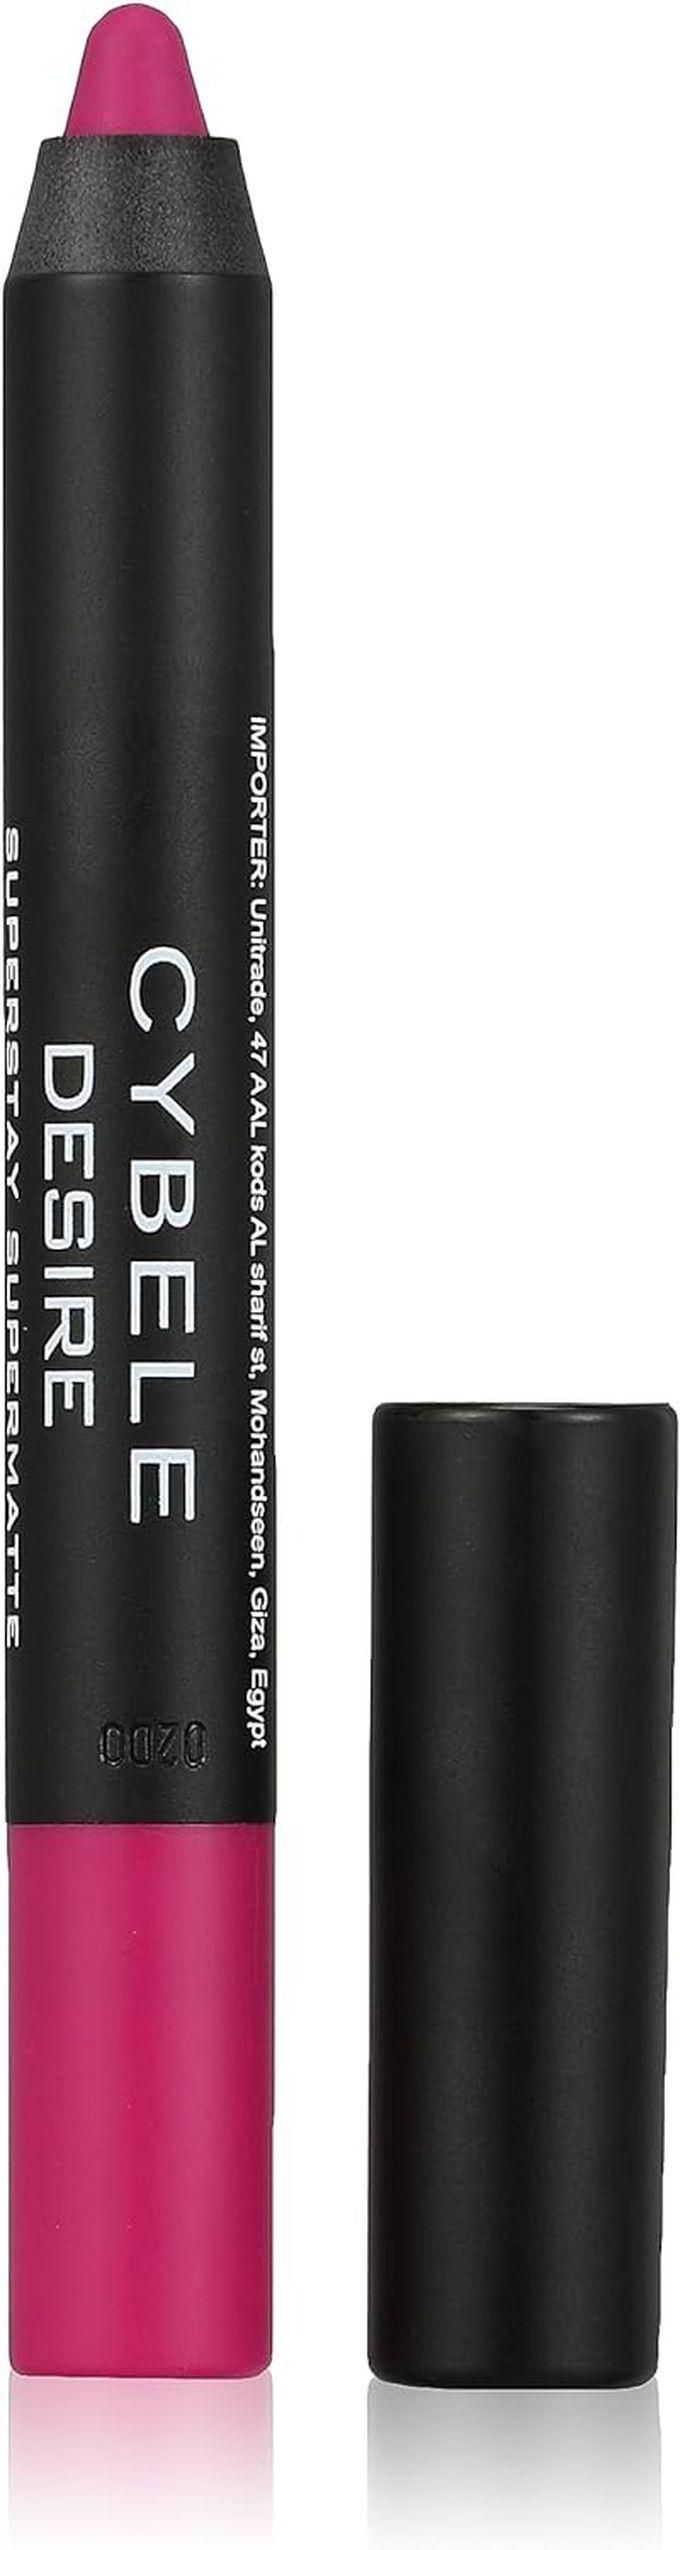 Cybele Desire Lipstick Pencil - No. 12 Fuschia